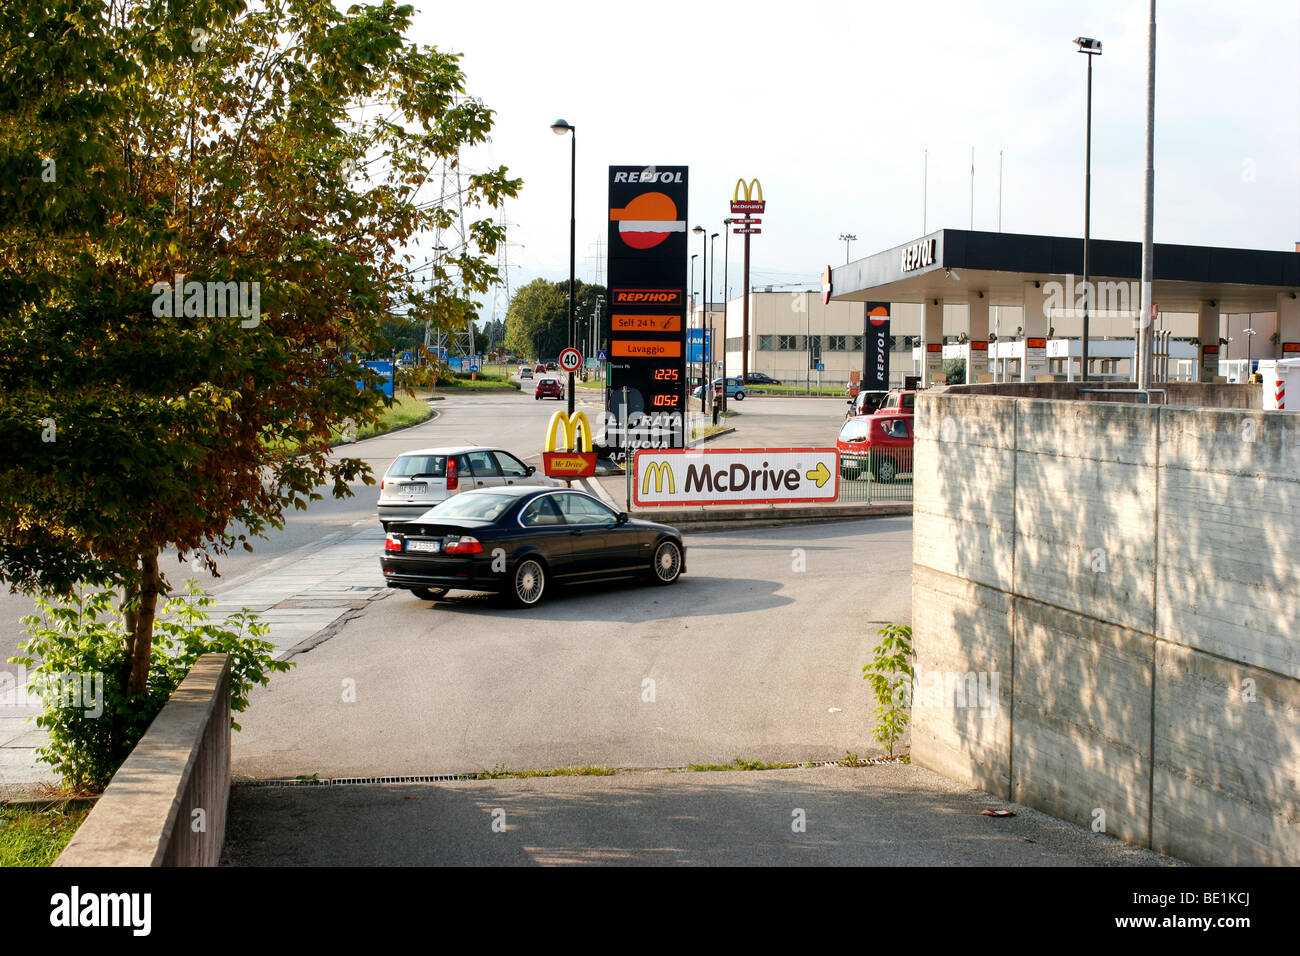 Centro Commerciale: Mc Donald's Mc Drive Drive thru, servizio Repsol gas station. Foto Stock